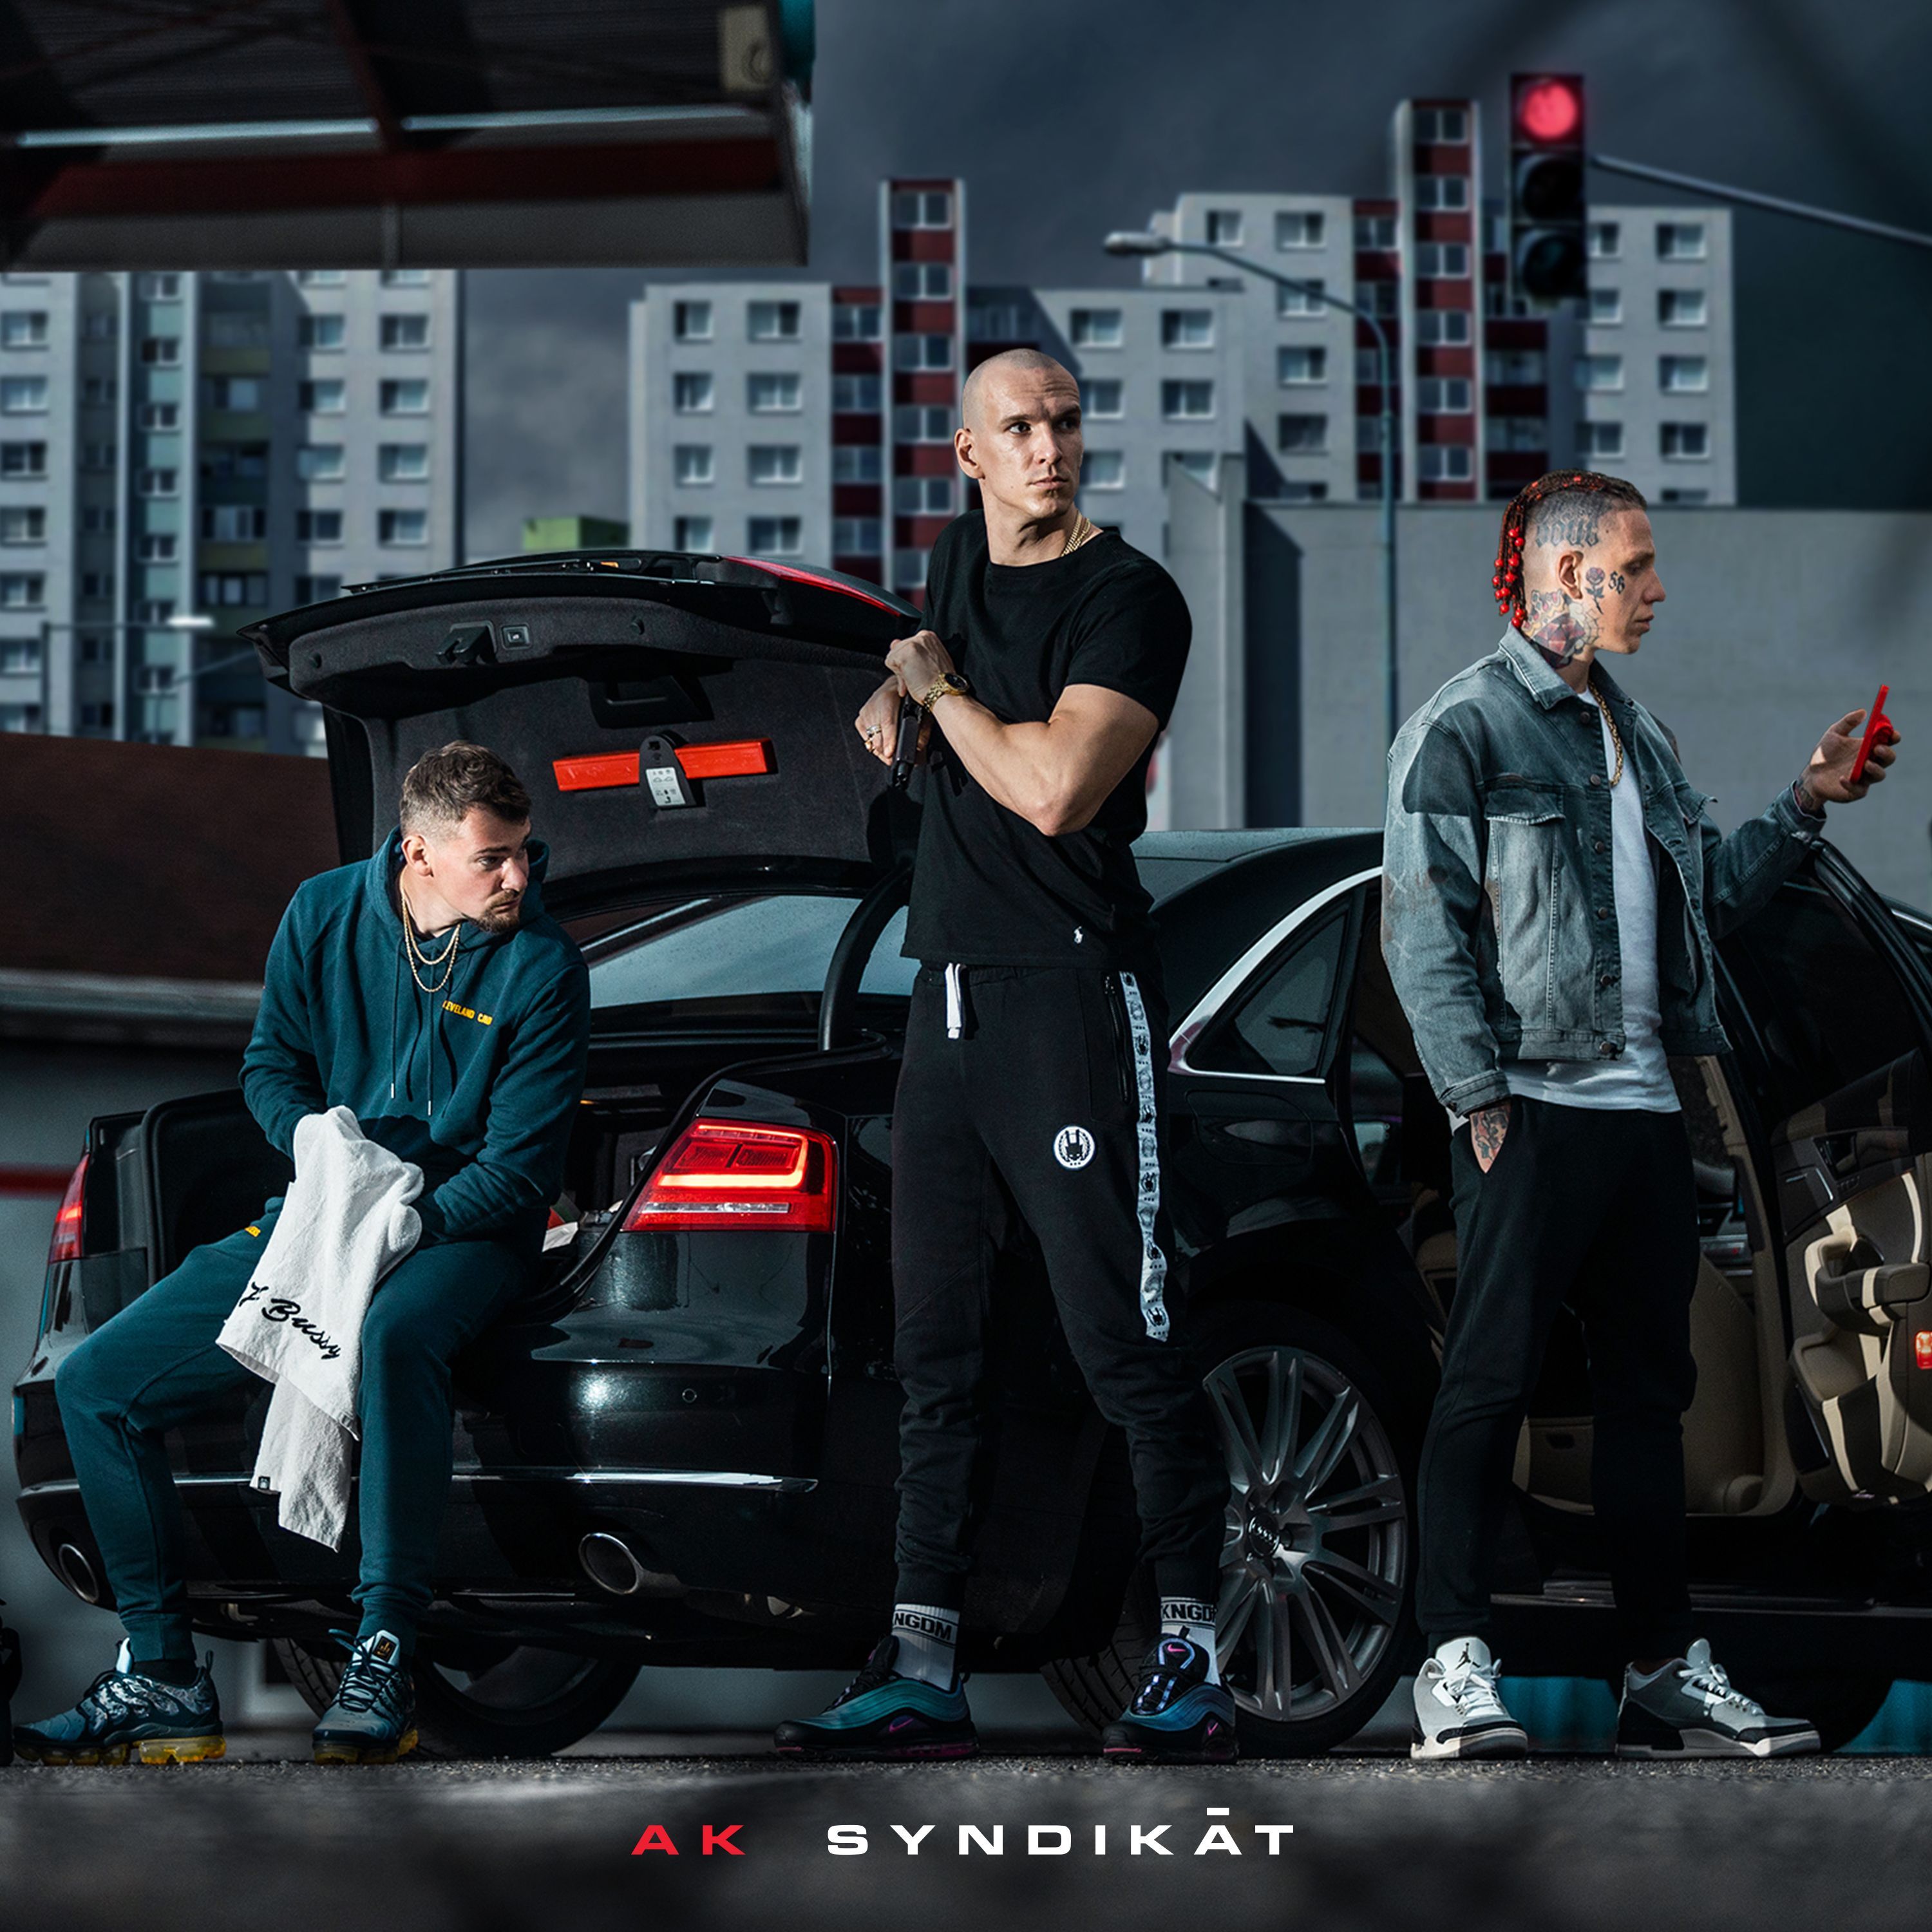 Azurit Kingdom odhaluje cover, tracklist i seznam svých koncertů k novému albu Syndikát